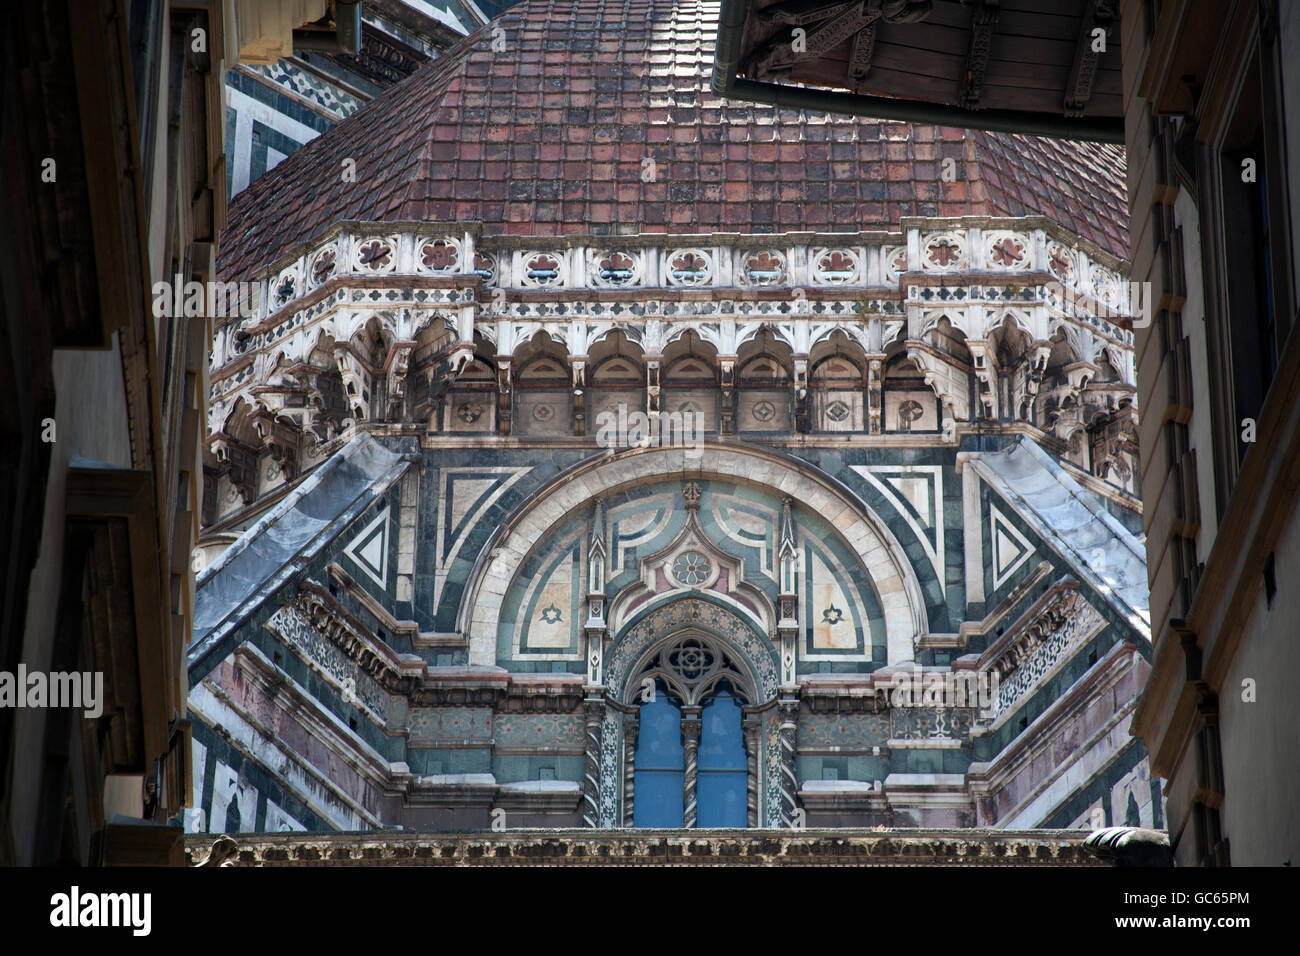 The Cattedrale di Santa Maria del Fiore - Duomo di Firenze - Florence Italy Stock Photo